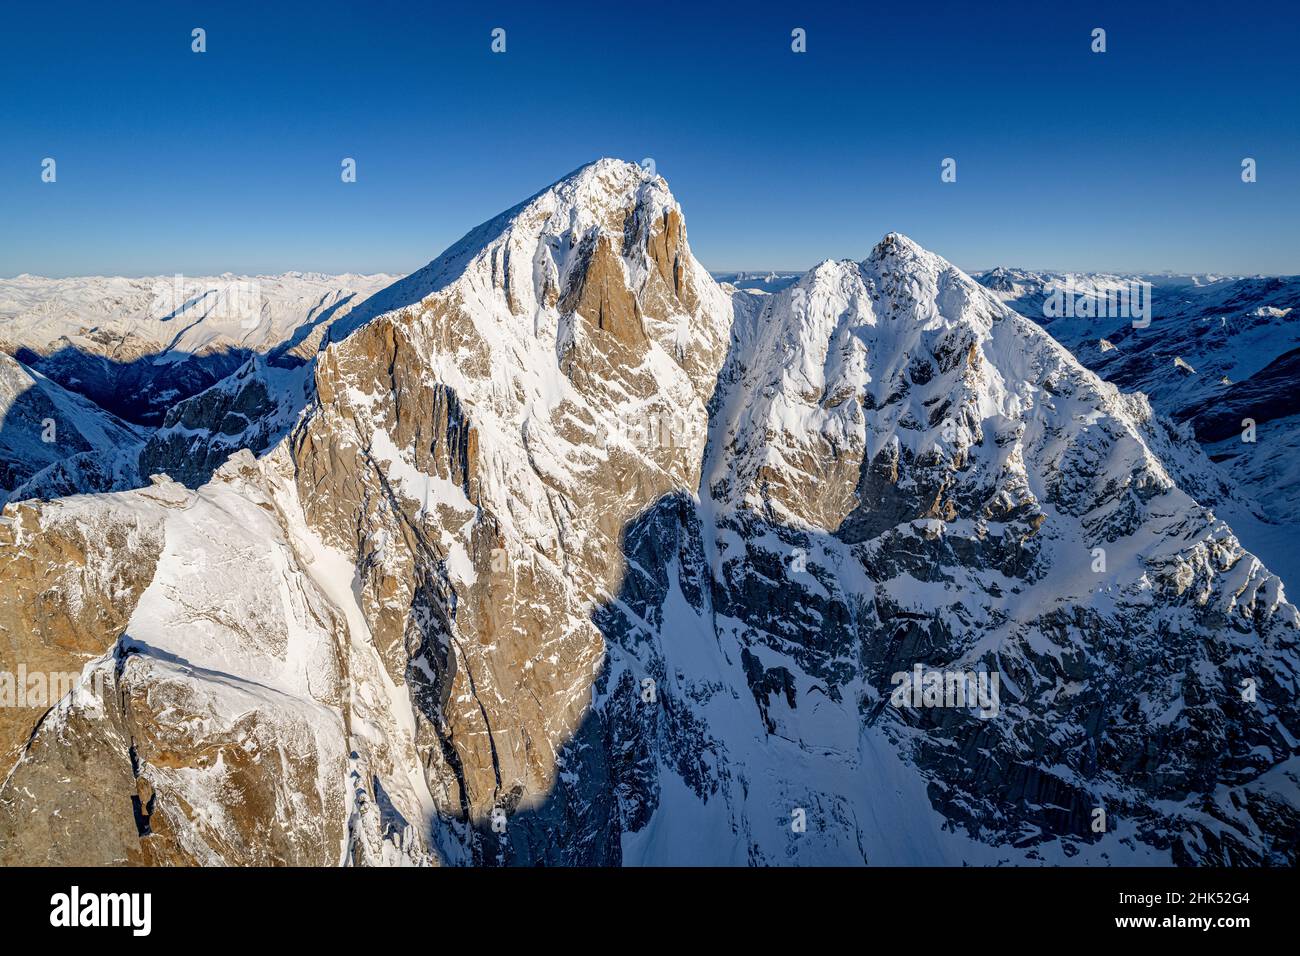 Ciel clair sur le majestueux Pizzo Cengalo en hiver, vue aérienne, Val Masino, Valtellina, province de Sondrio,Lombardie, Italie, Europe Banque D'Images